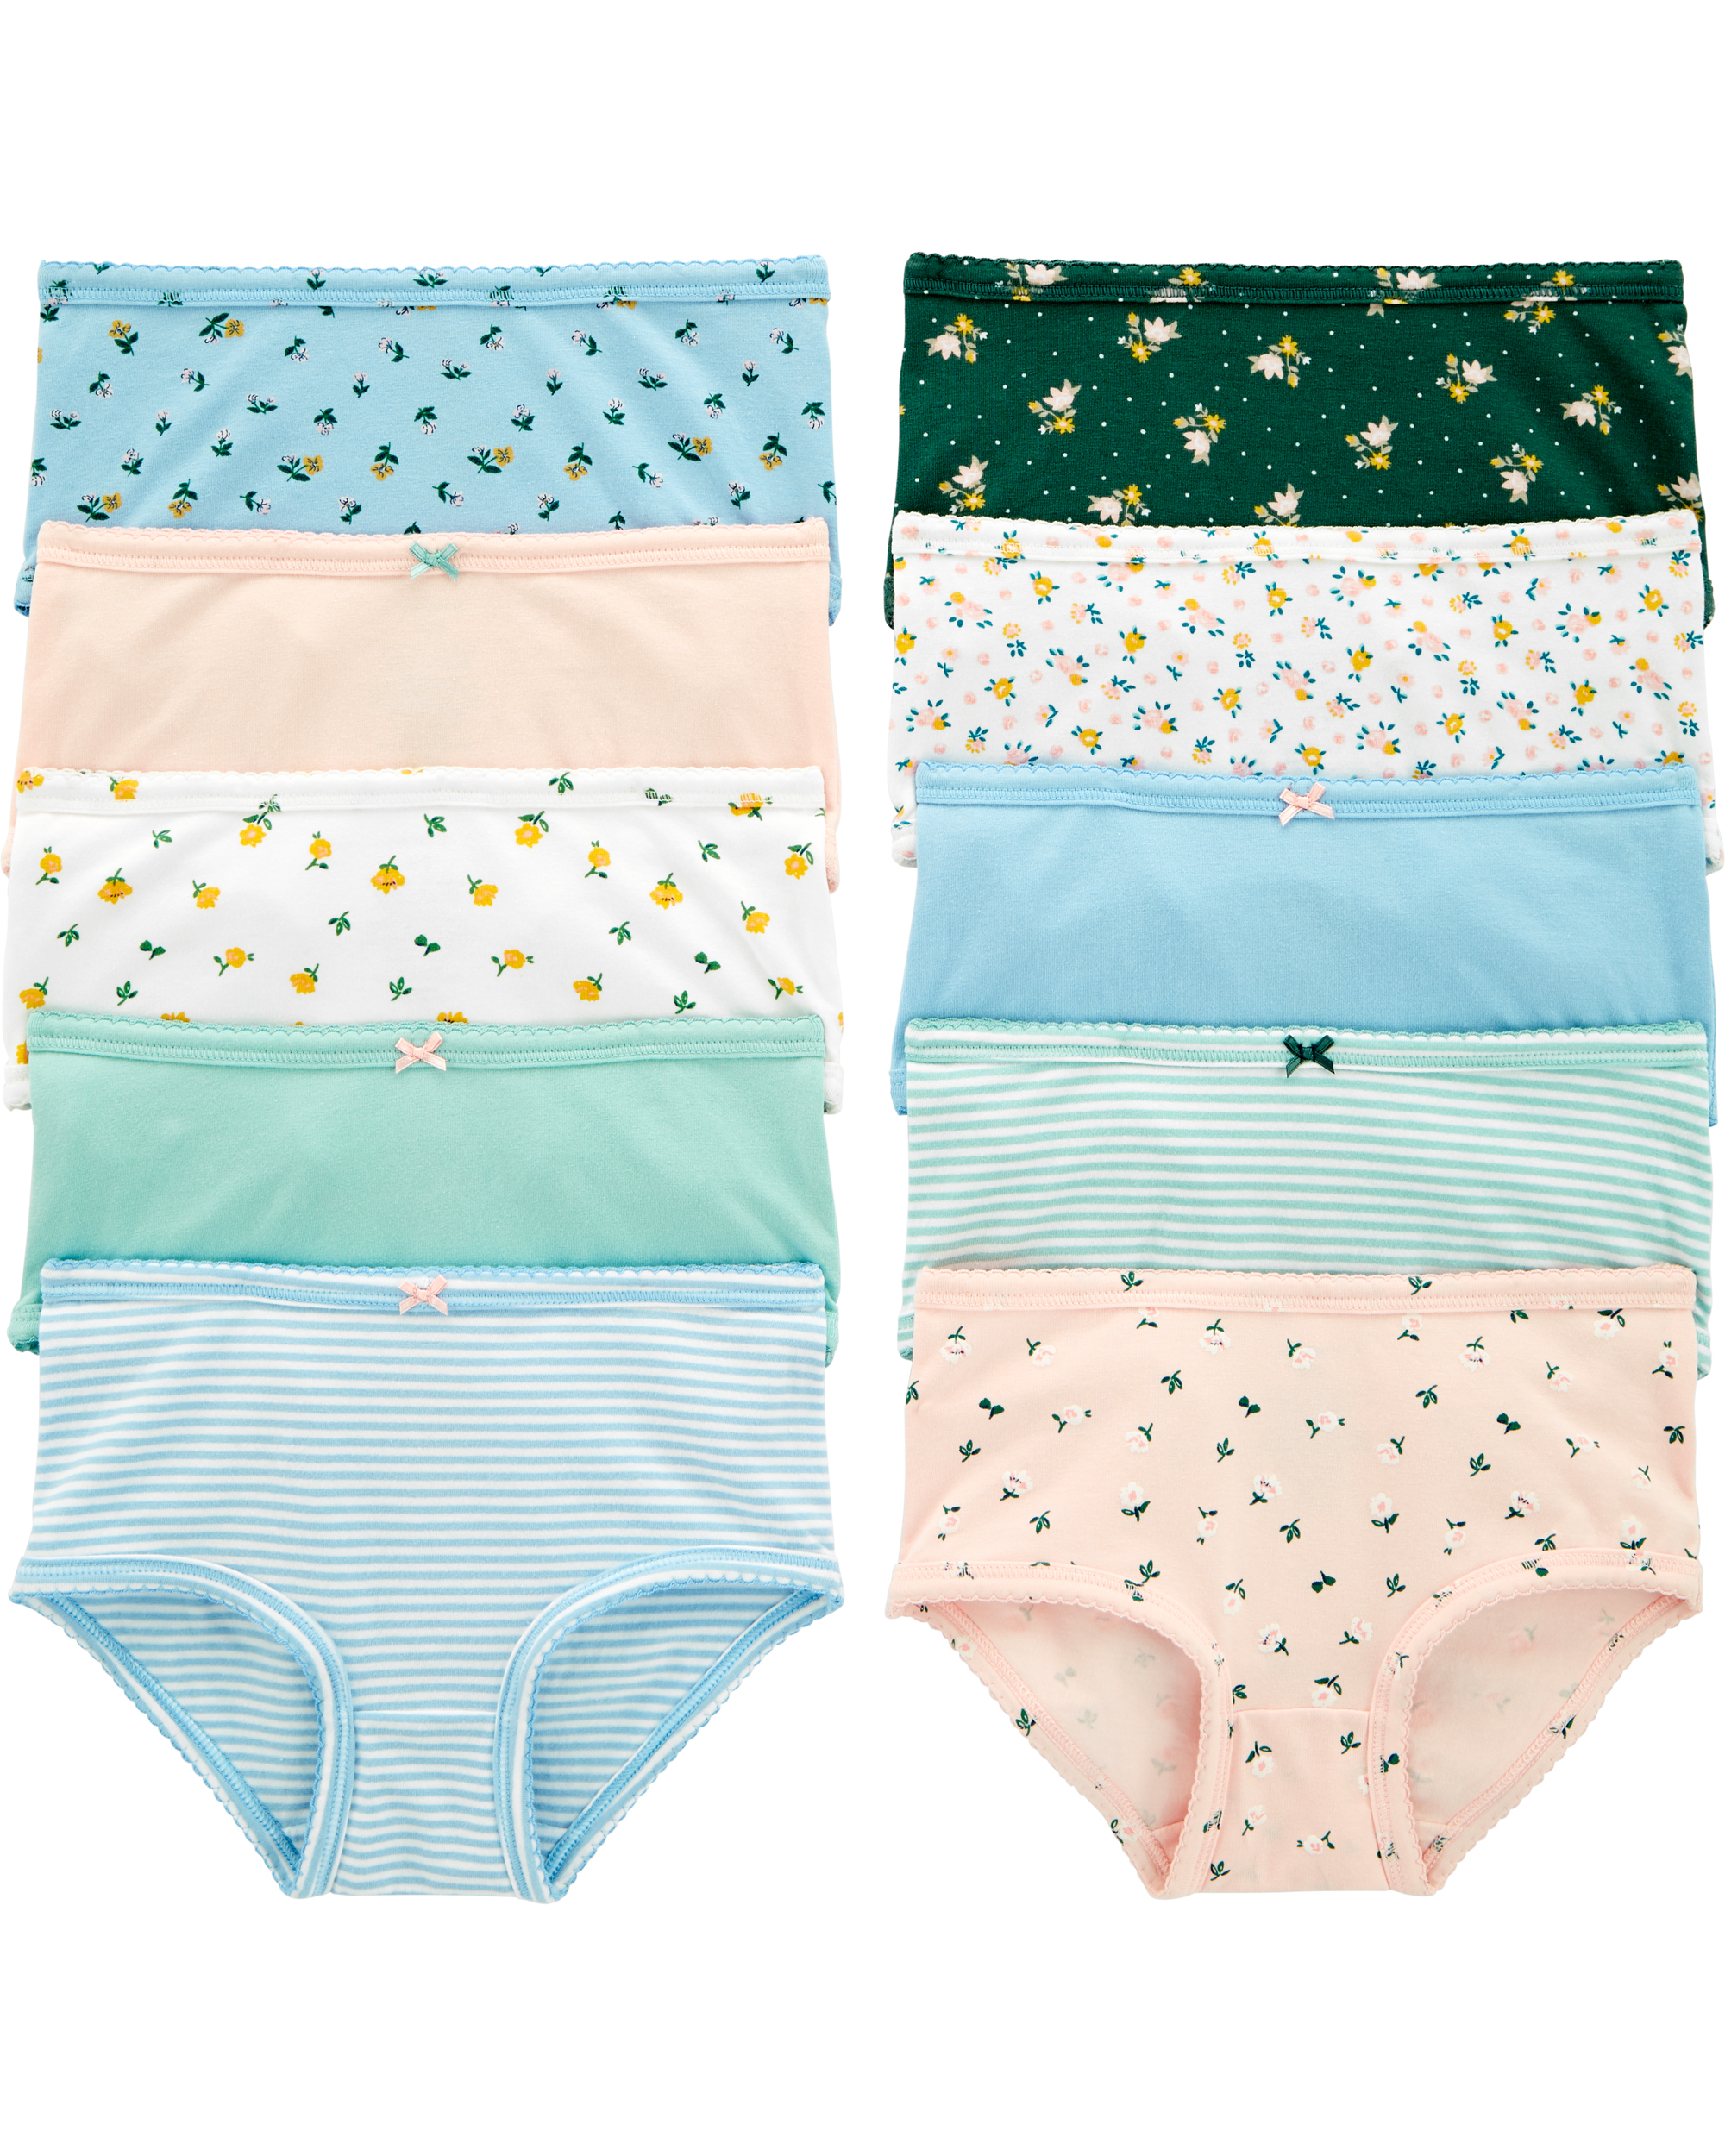 Buy RM Girls Cotton Blend Printed Panties Underwear (Multicolor, 2